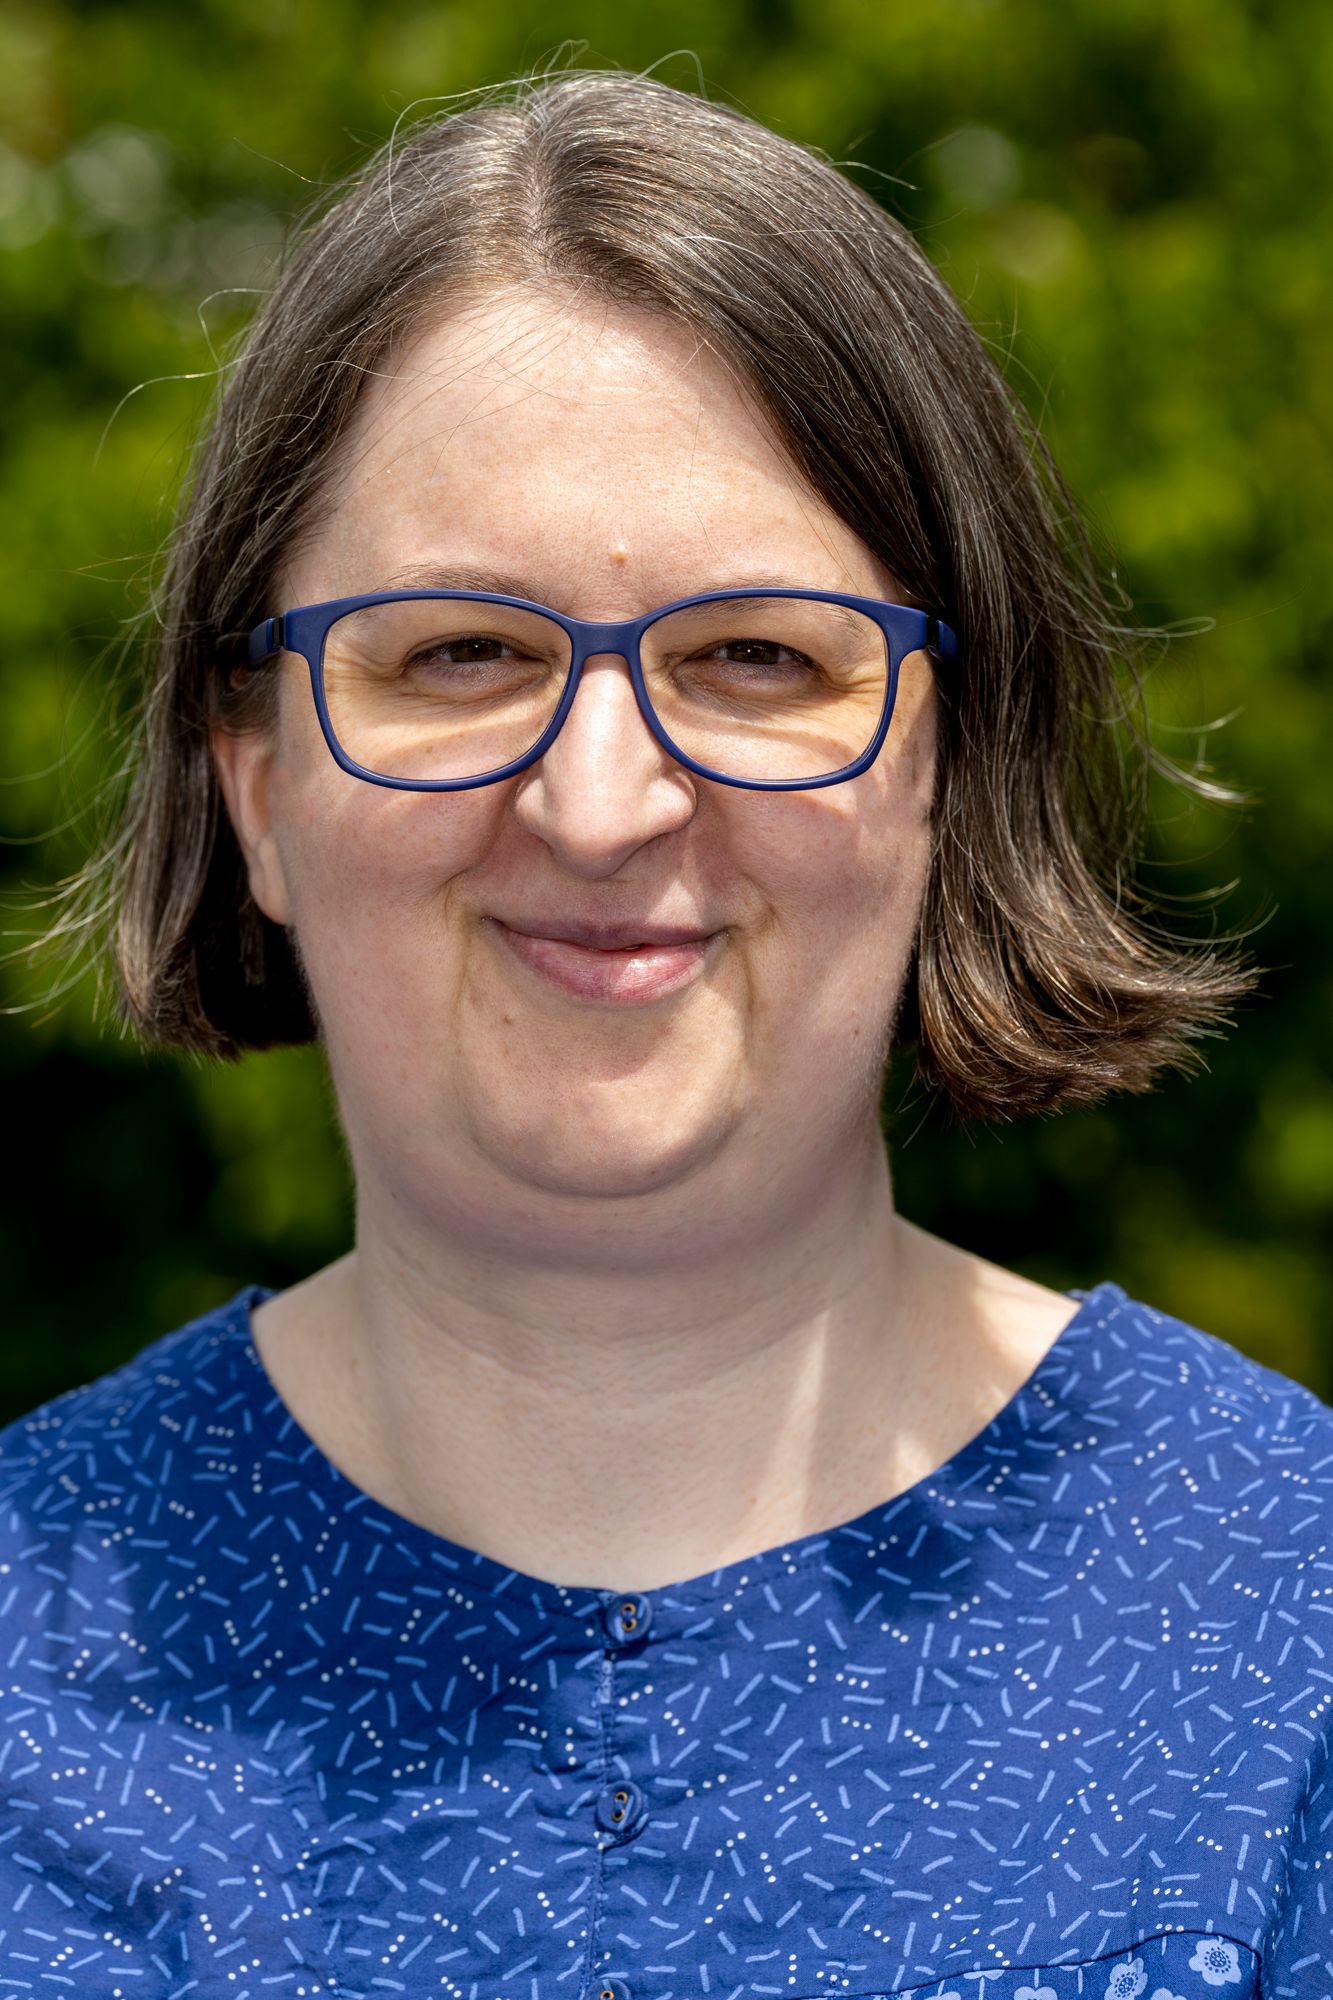 Annette Schwindt: Ich bin Lektorin und Wegbegleiterin für digitale Kommunikation